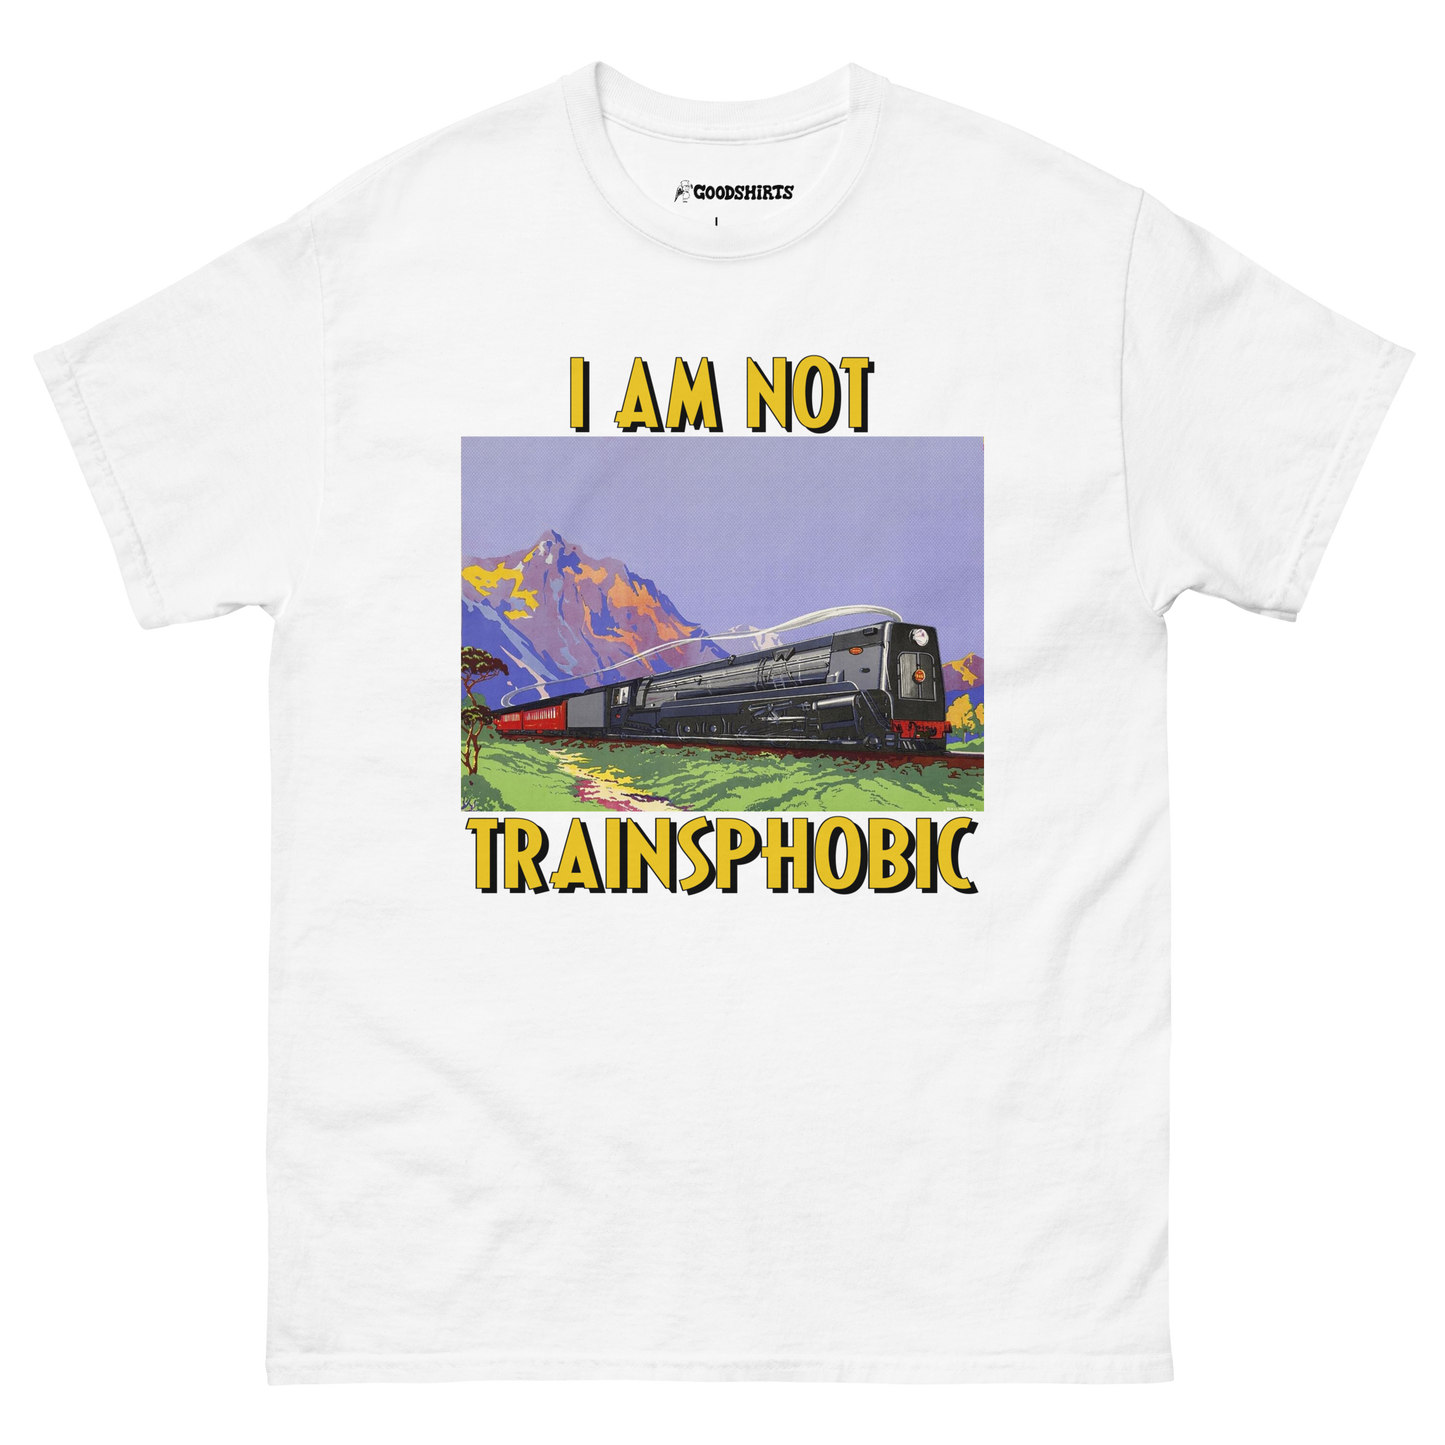 I Am Not Trainsphobic.